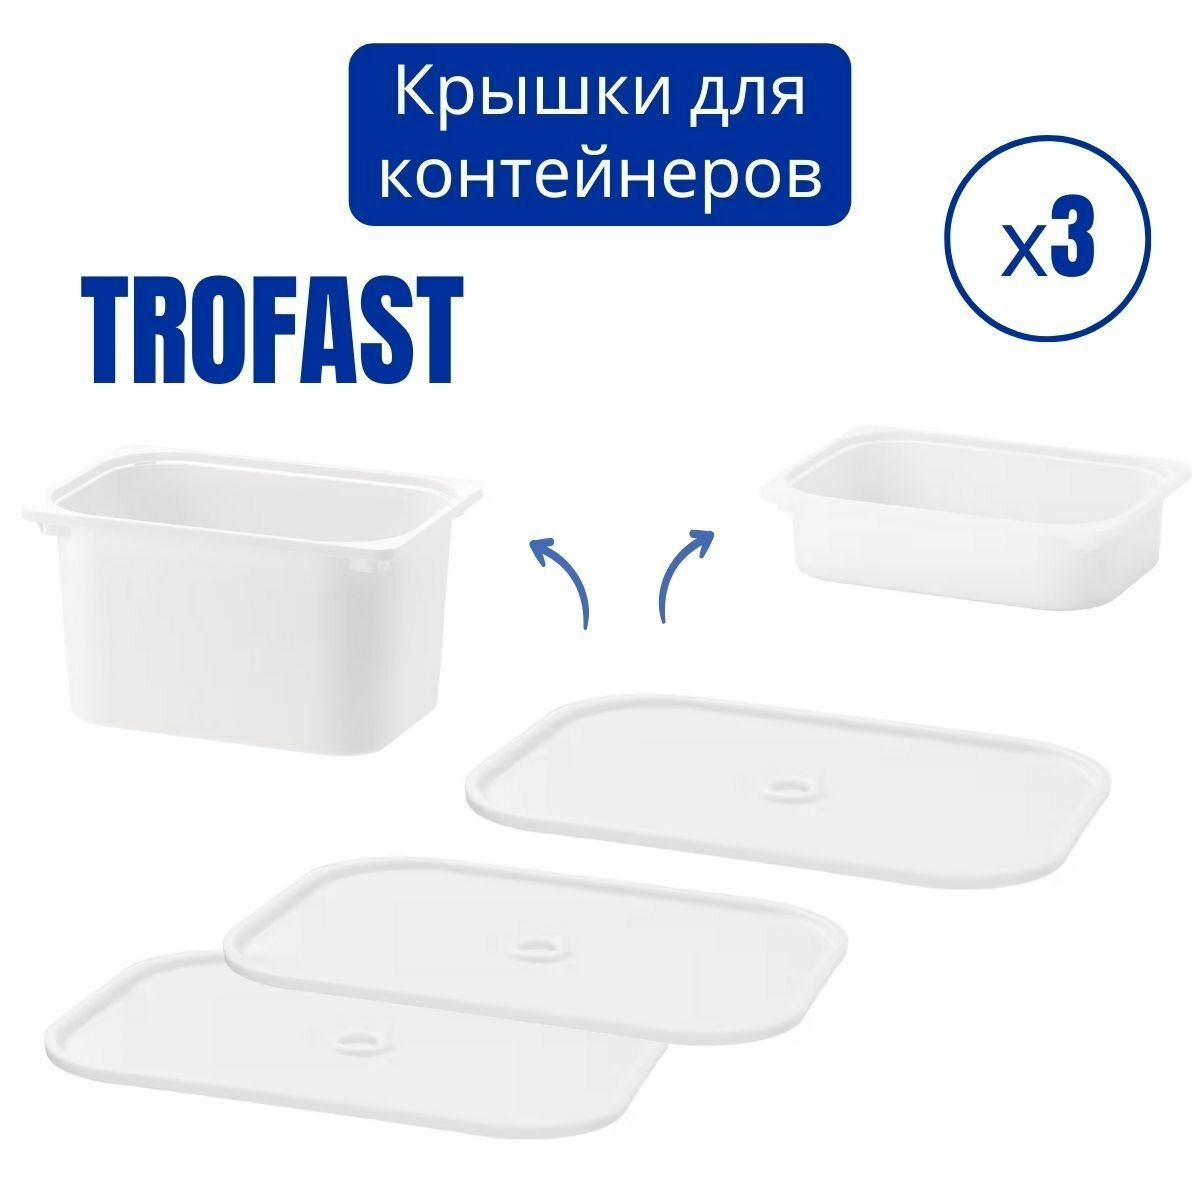 Крышка труфаст для контейнера икеа, набор 3 шт, белый, контейнер для хранения TROFAST IKEA